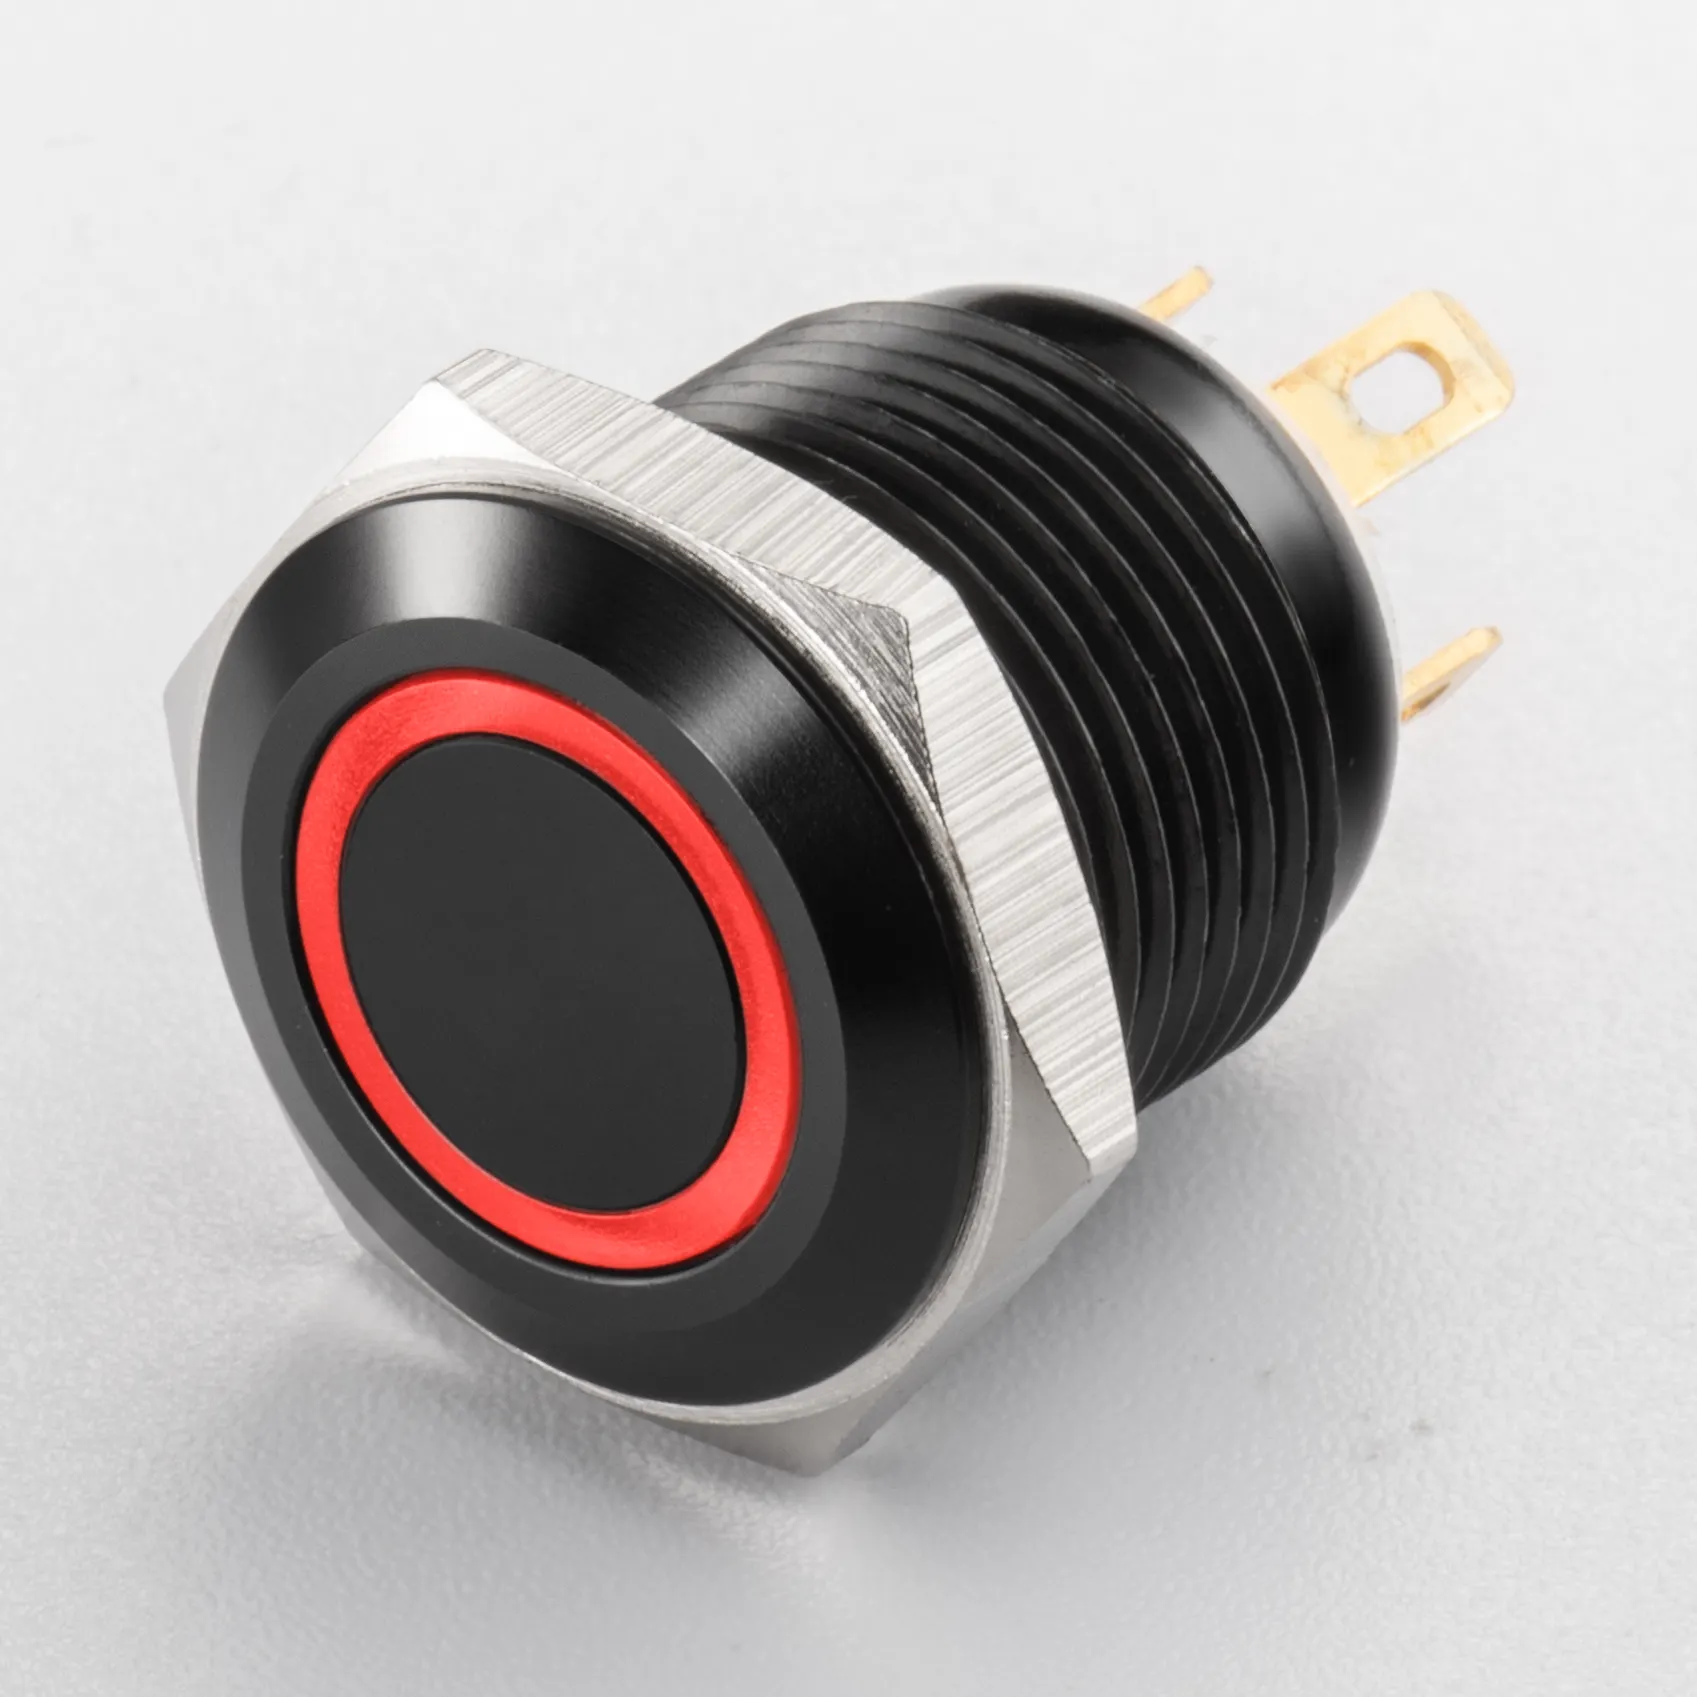 16 mm elektronischer Druckknopf-Schalter sichere Funktionalität Vandalismus-schutz flacher Knopfschalter  robust und stilvoll